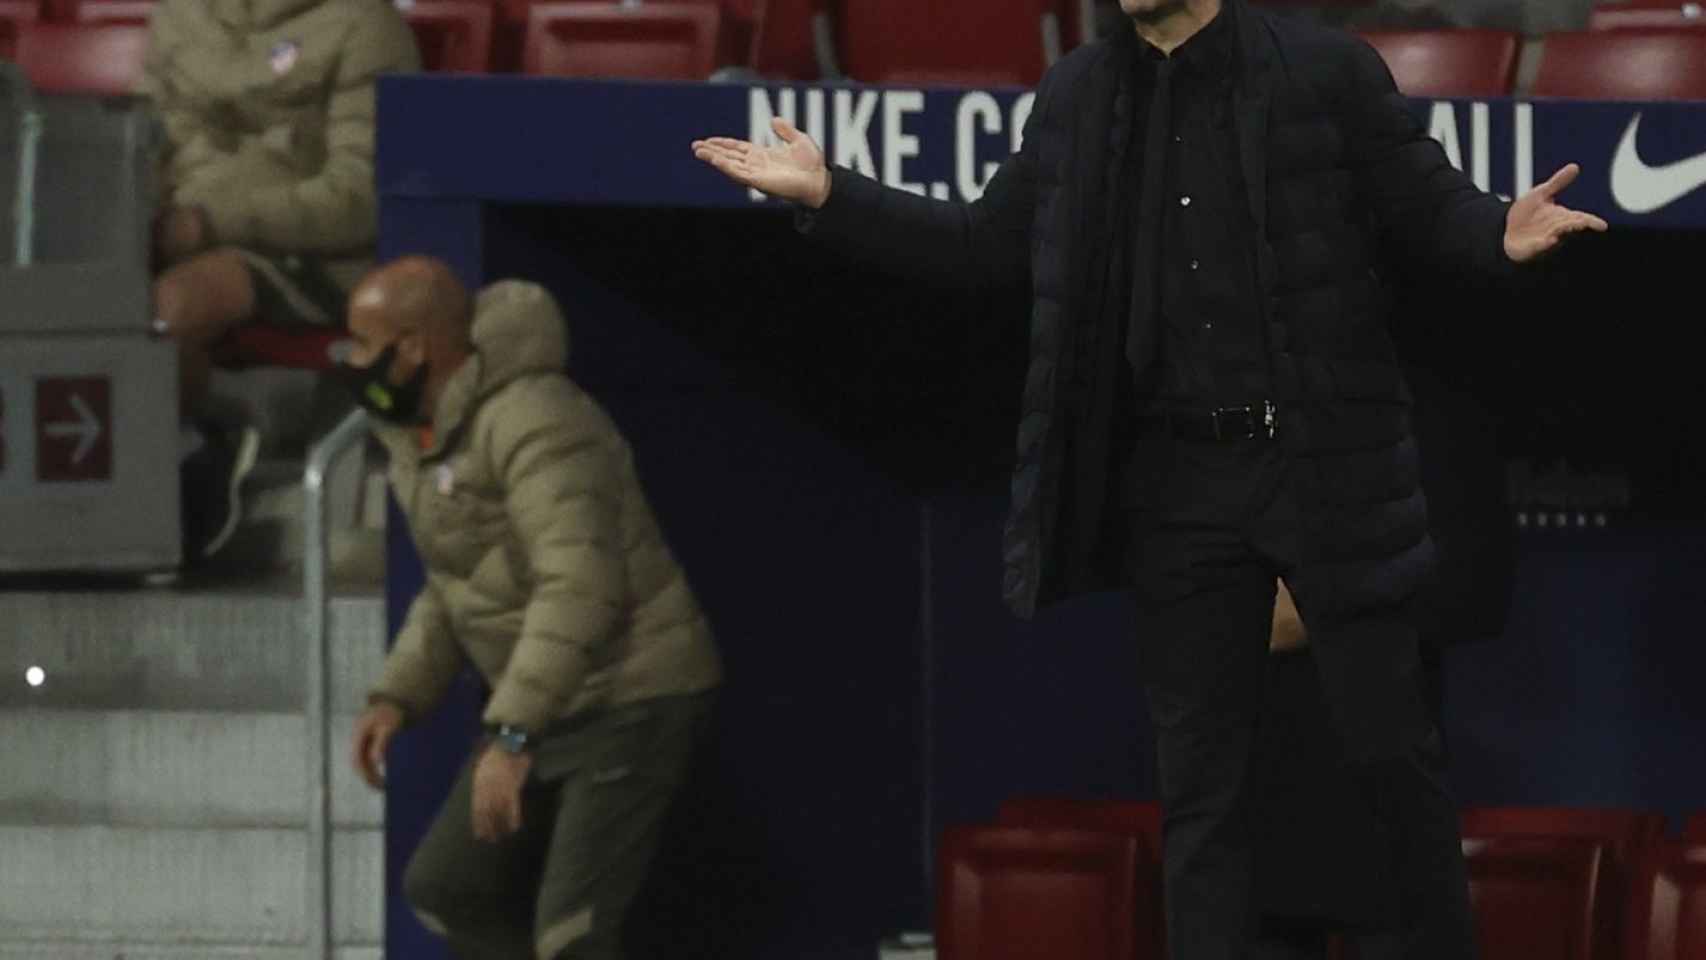 El Cholo Simeone dirigiendo al Atlético de Madrid contra el Celta / EFE